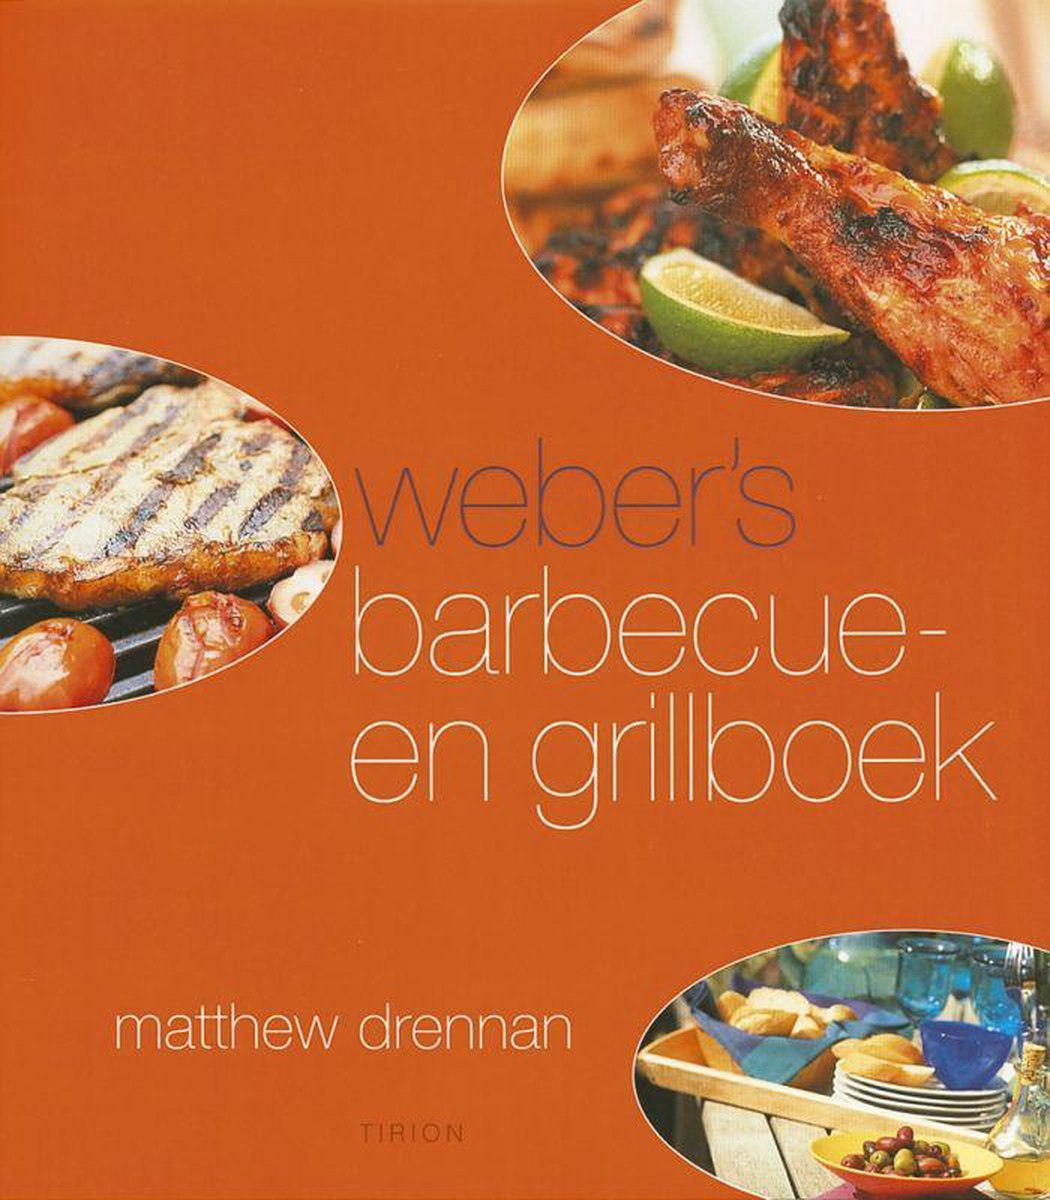 Webers Barbecue En Grillboek, Matthew Drennan | 9789043902038 | Boeken |  bol.com